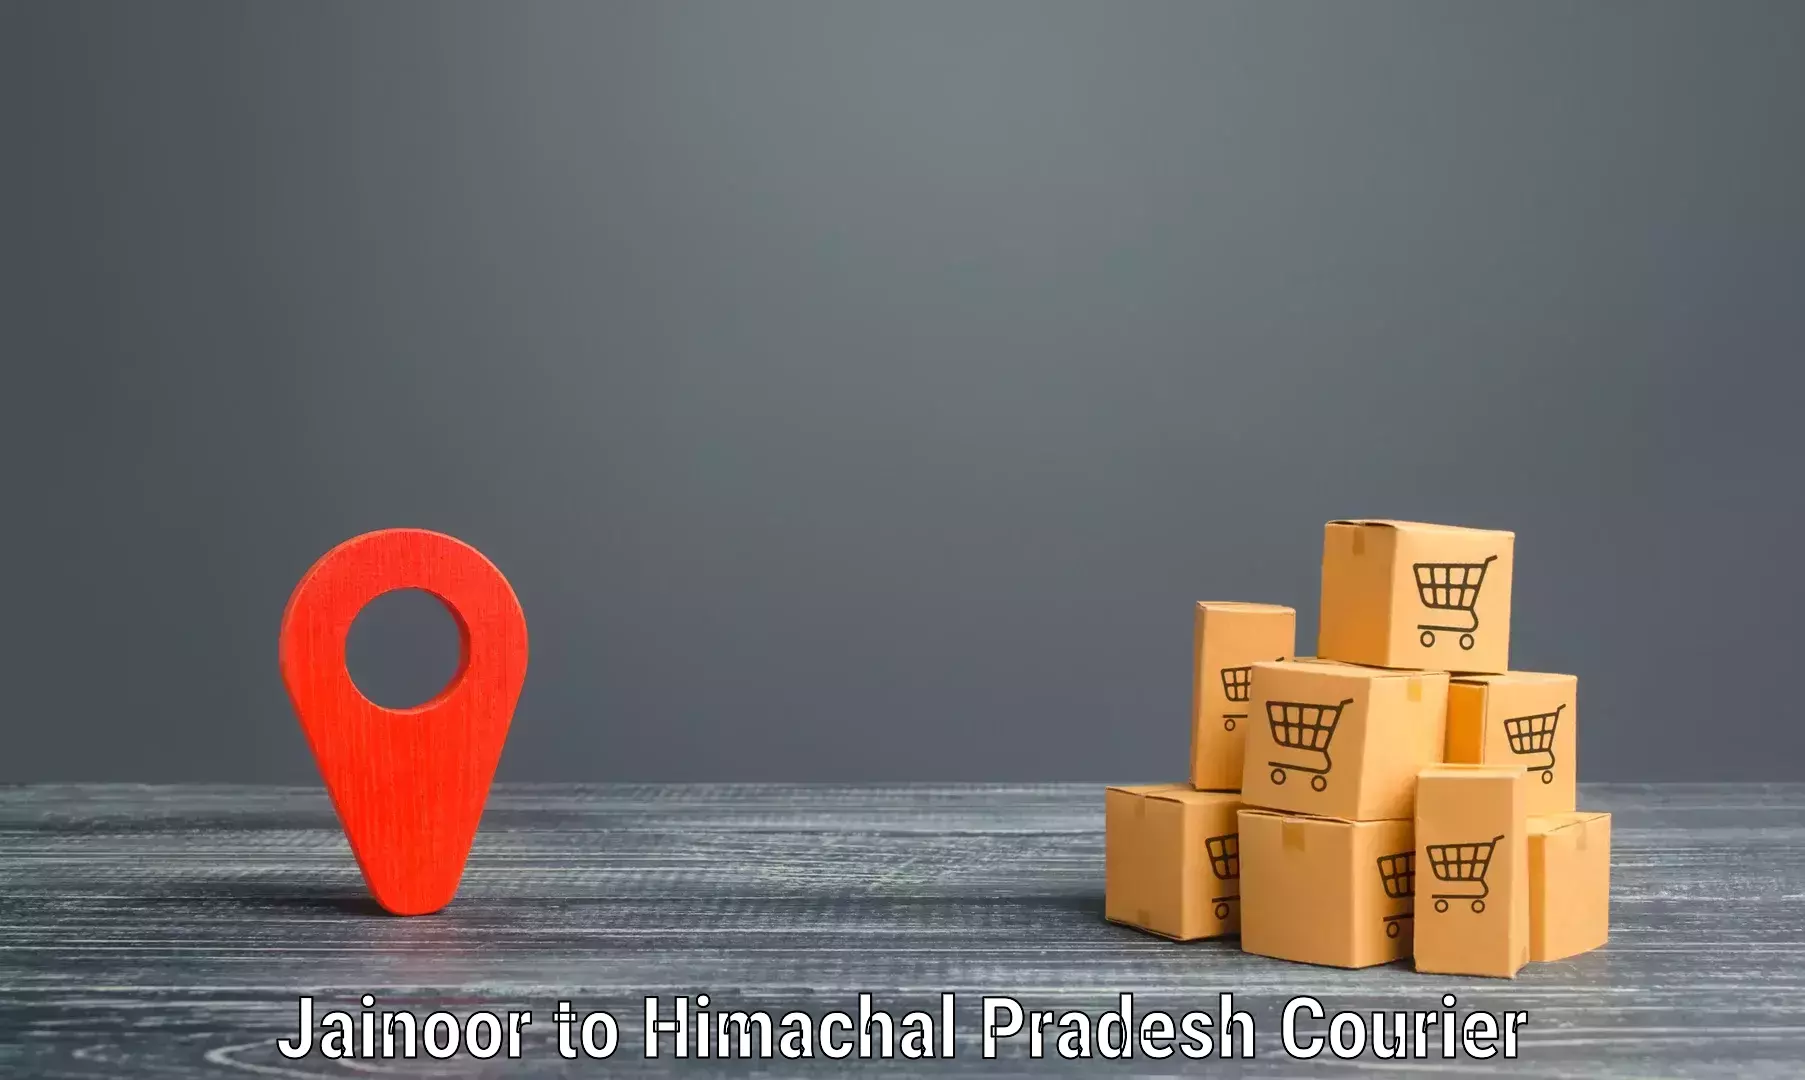 Efficient parcel service Jainoor to Himachal Pradesh